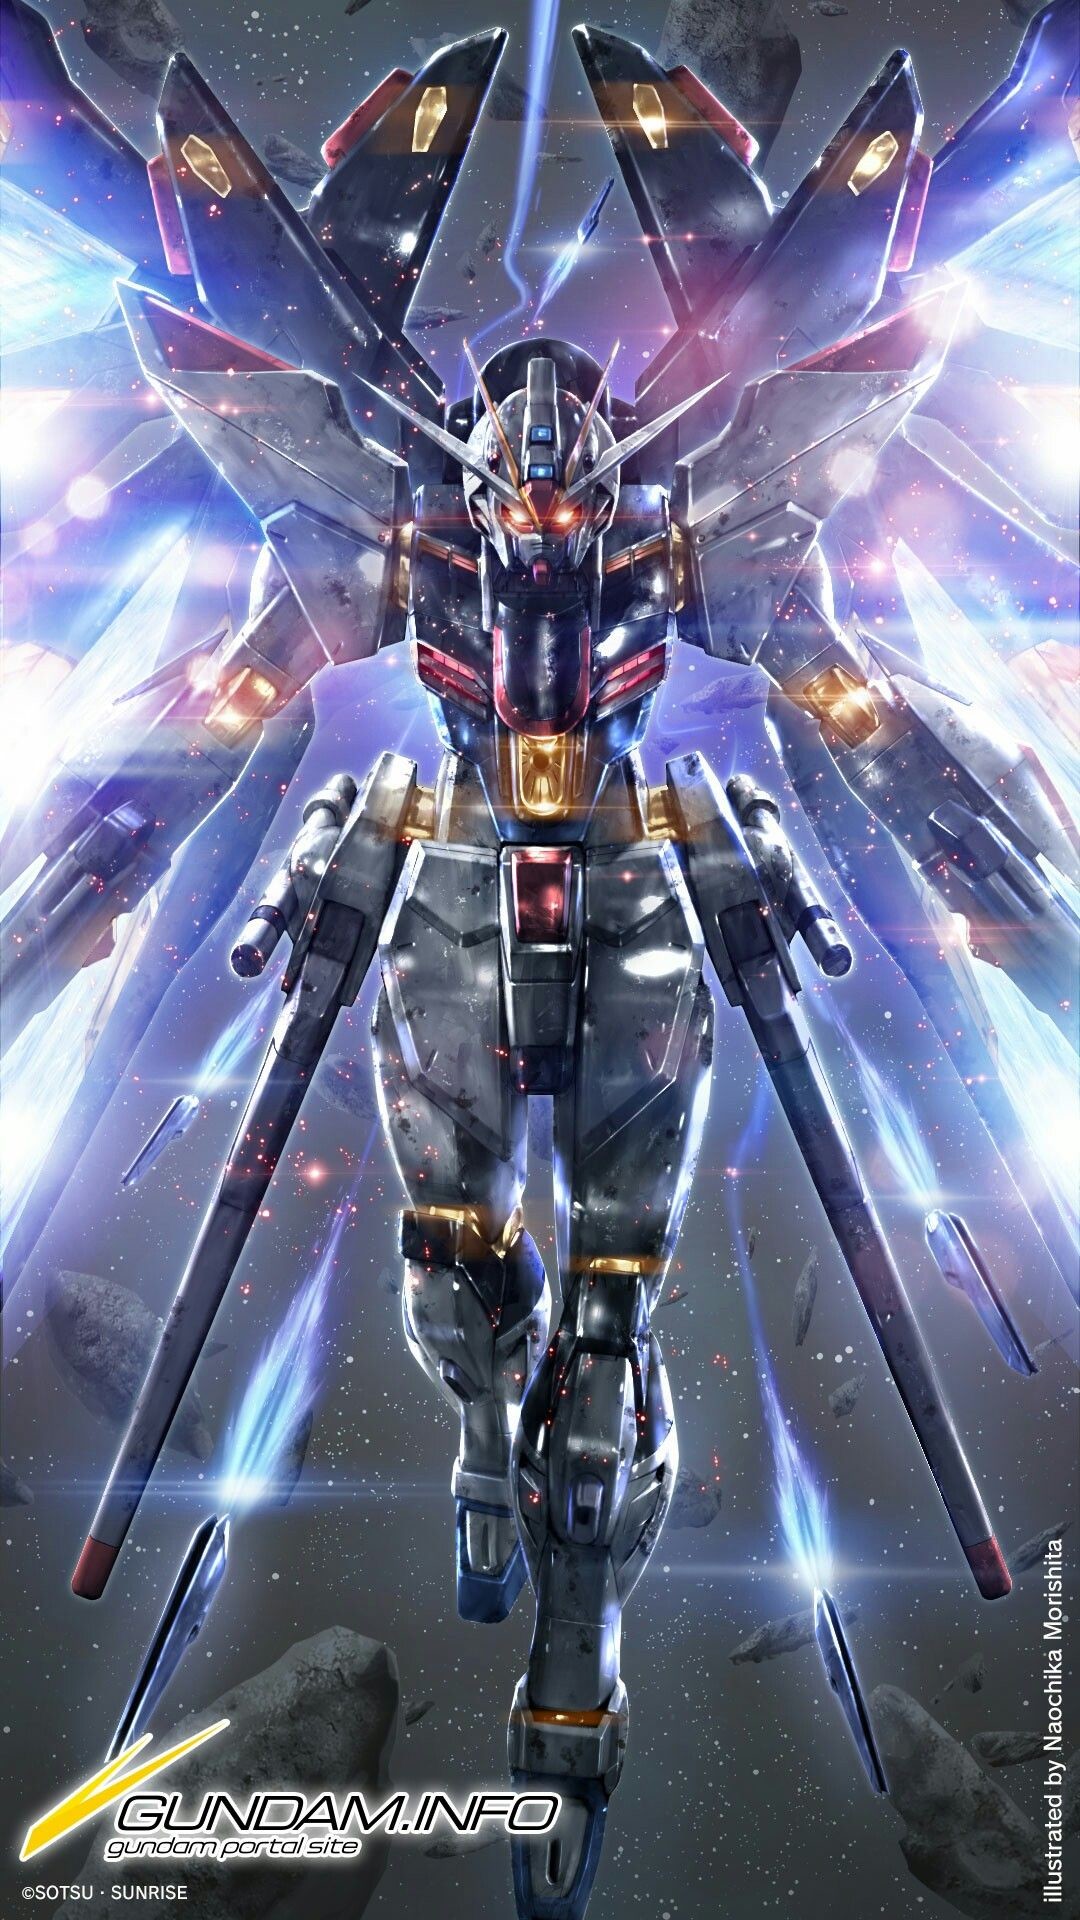 Gundam Wallpaper 1080p Strike Freedom Gundam Wallpaper Hd Hd Wallpaper Backgrounds Download